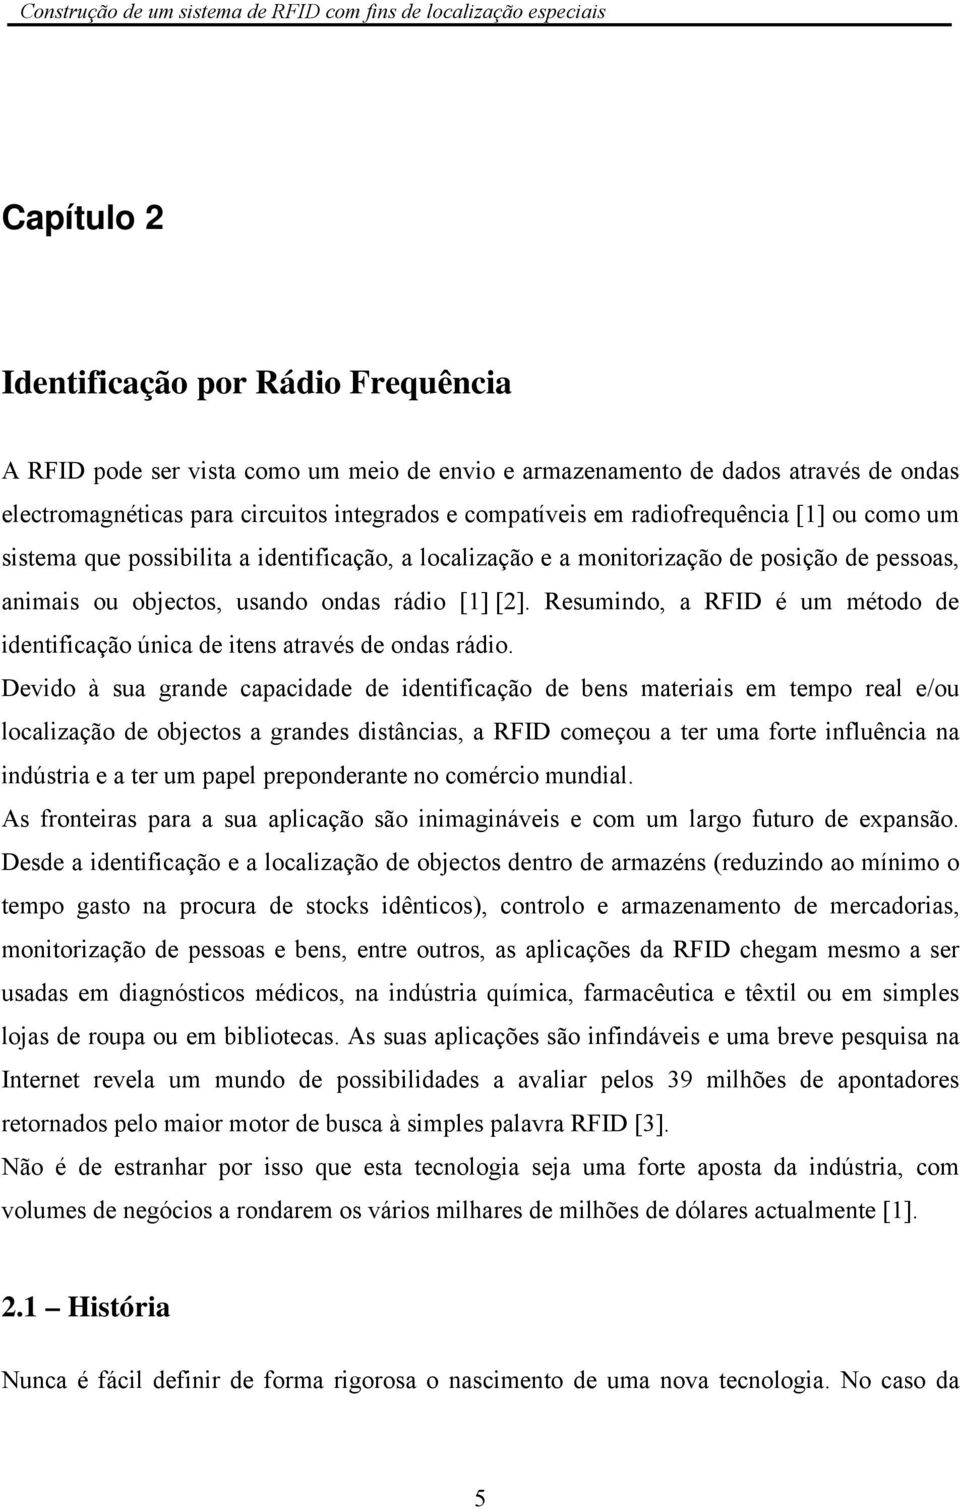 Resumindo, a RFID é um método de identificação única de itens através de ondas rádio.